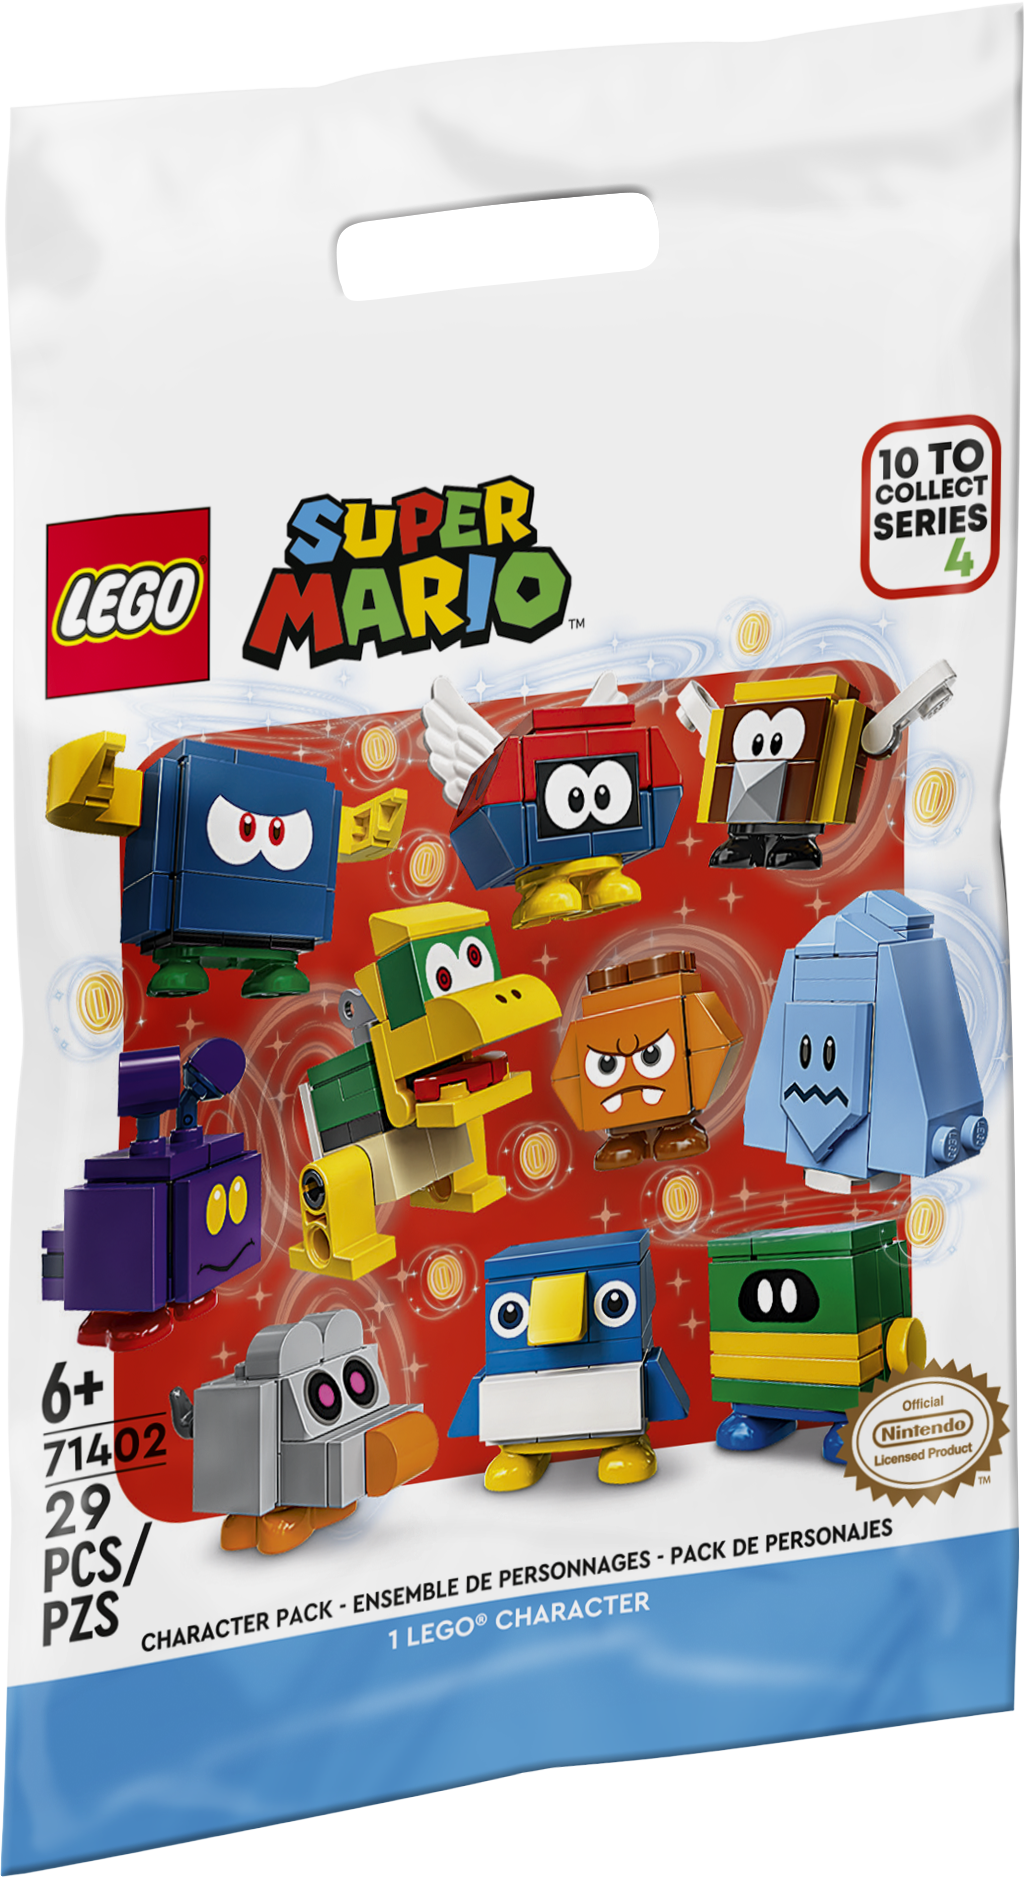 キャラクター パック シリーズ4 71402 | レゴ®スーパーマリオ™ |レゴ®ストア公式オンラインショップJPで購入